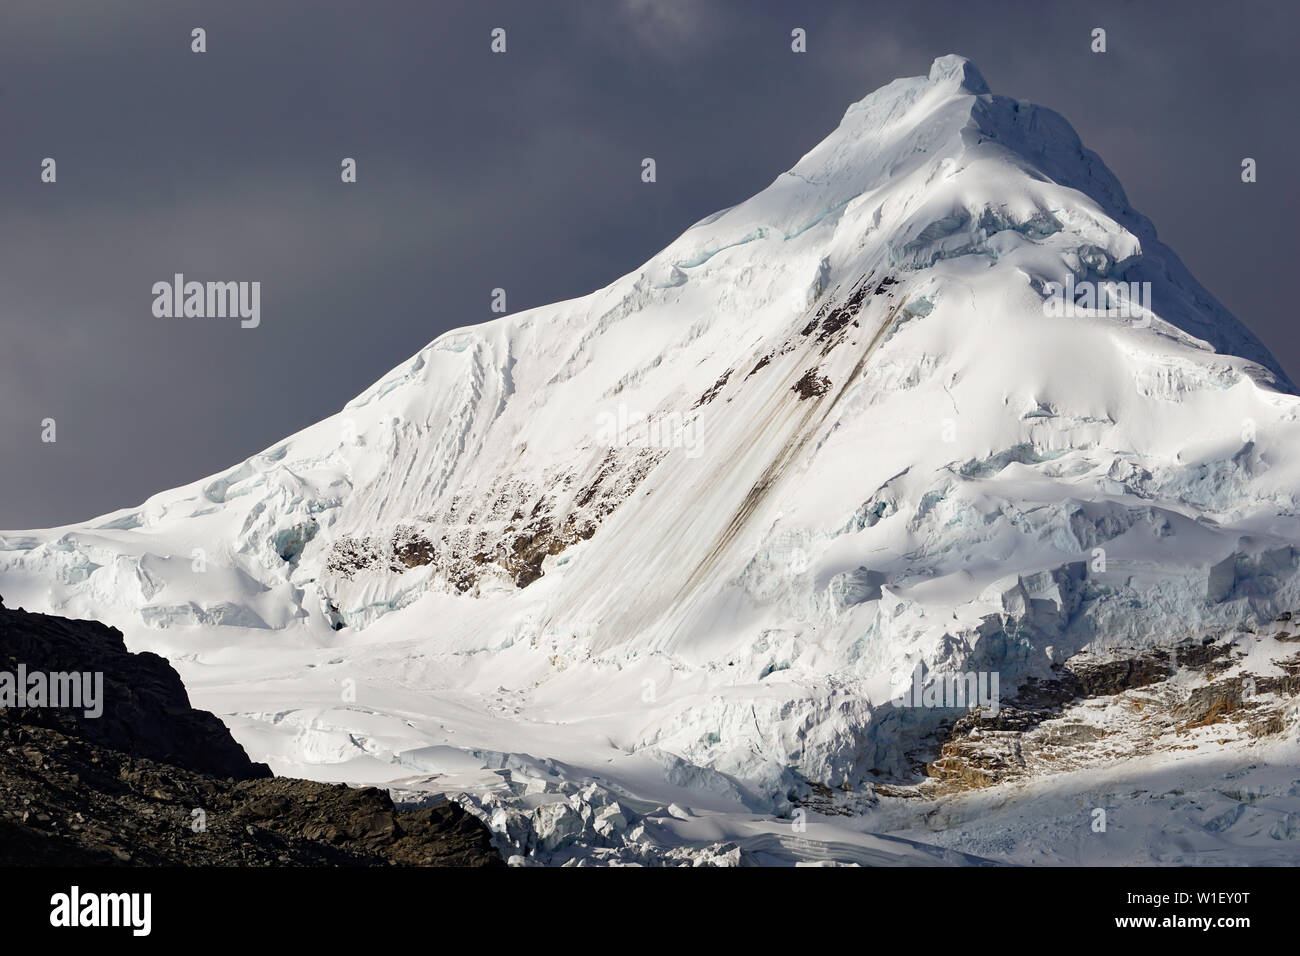 Le nord-est de visage Nevado Tocllaraju pic de montagne dans la cordillère centrale Blanca dans les Andes du Pérou dans la lumière du soir Banque D'Images